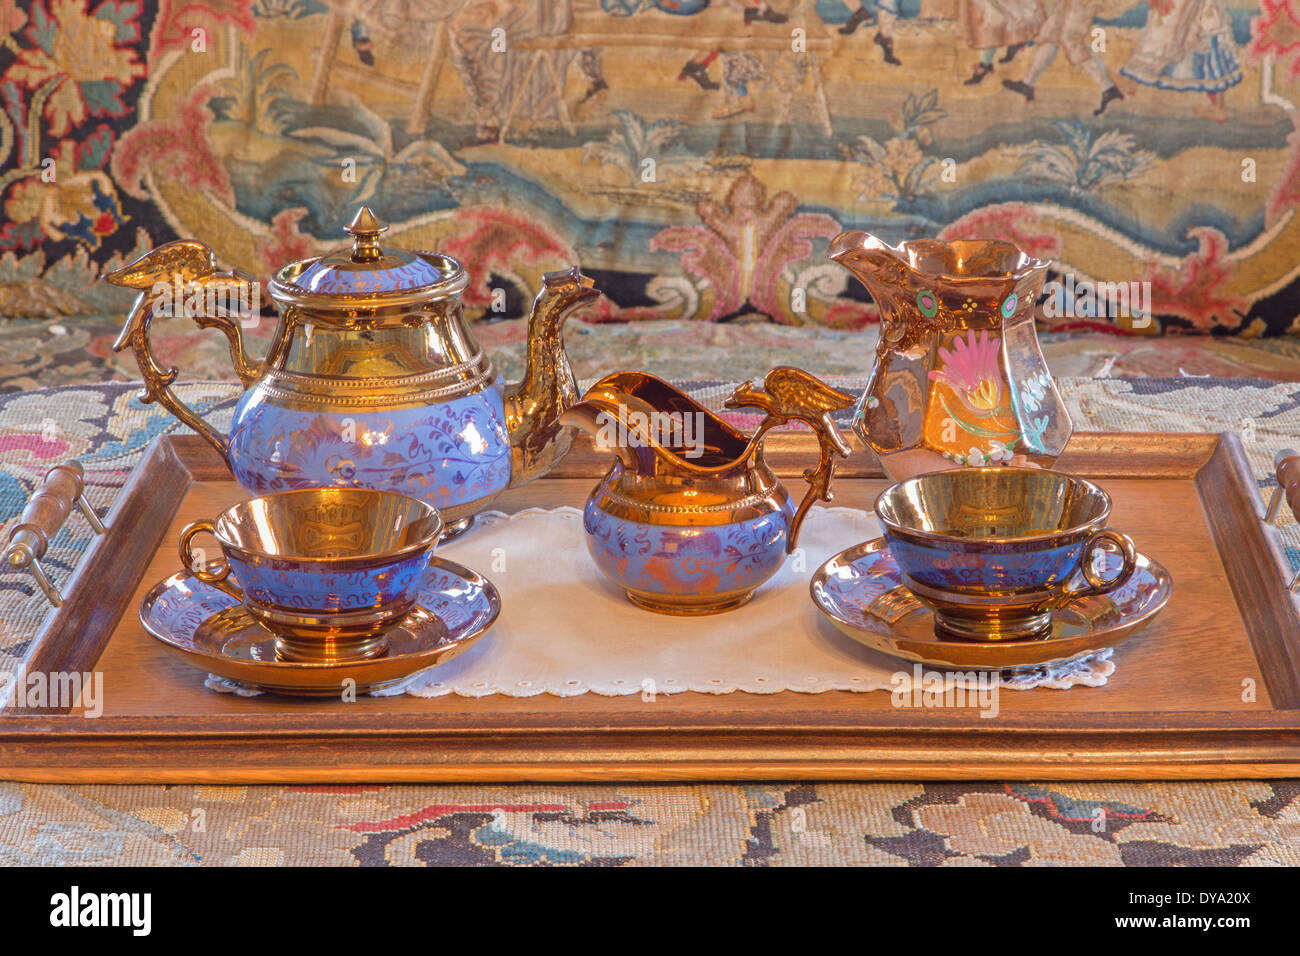 San Anton, Eslovaquia - Febrero 26, 2014: Servicio de té de porcelana 19. ciento. En el palacio de San Antón. Foto de stock